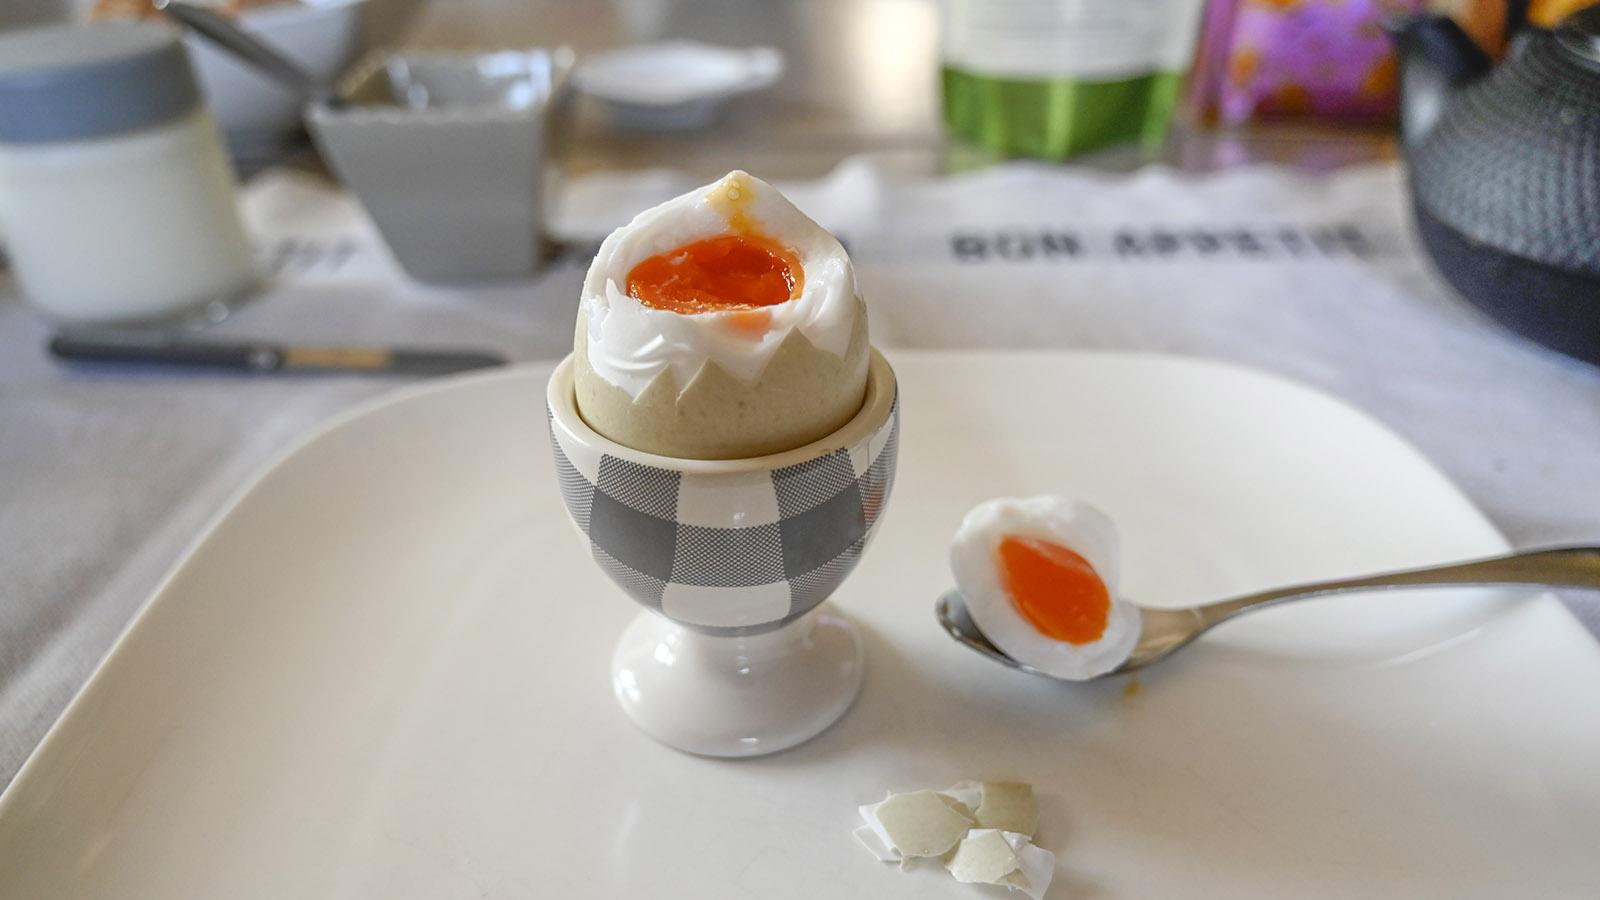 Erkannt? Bei Marlène und René gibt es Enten-Eier zum Frühstück - sehr aromatisch! Foto: Hilke Maunder